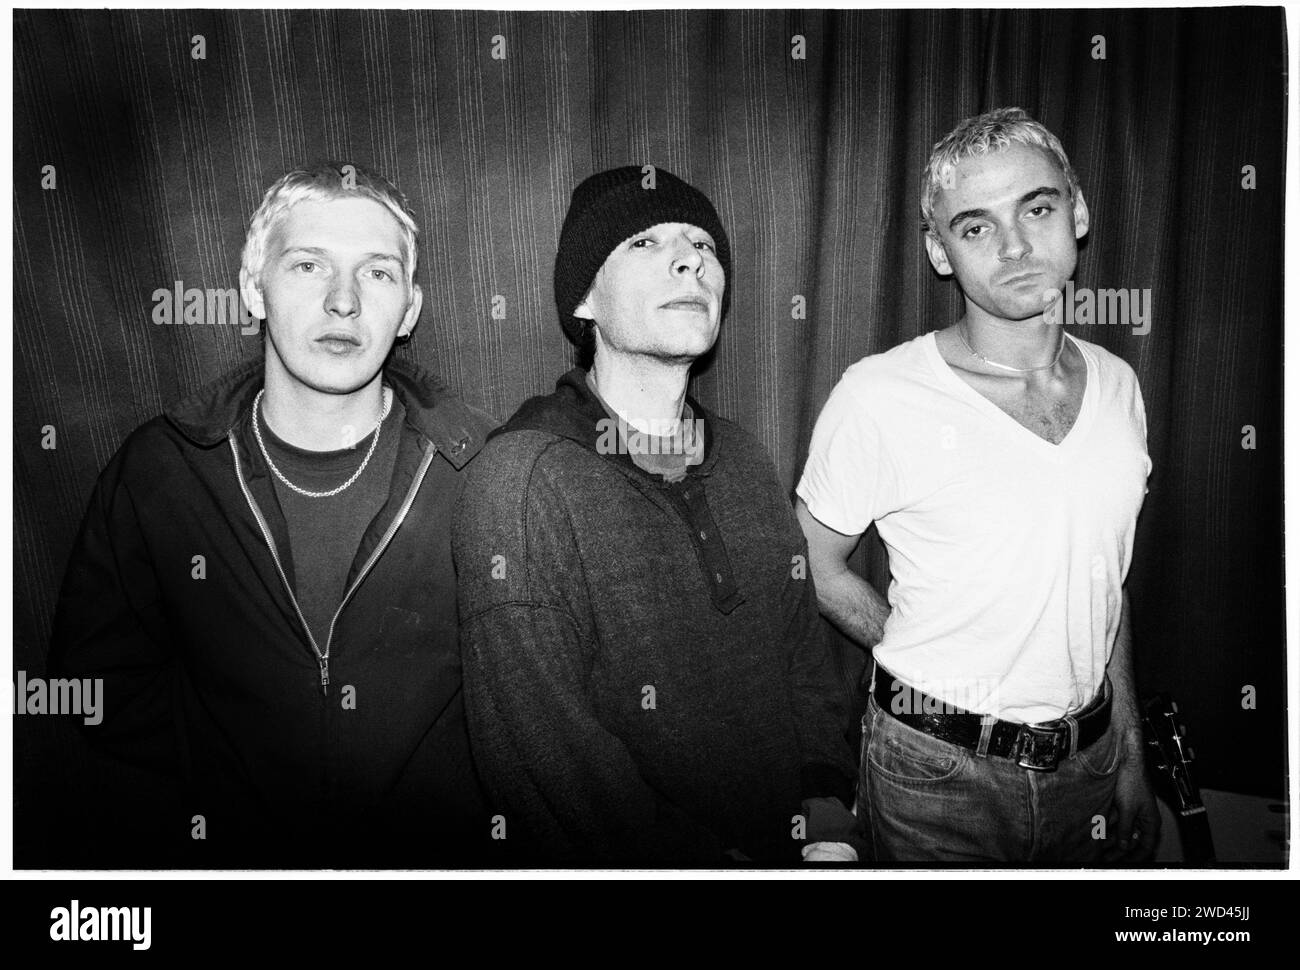 Die Punkband S*M*A*S*H (SMASH) fotografierte Backstage bei Newport TJs, UK am 13. Oktober 1994. Foto: Rob Watkins. INFO: SMASH, eine britische Punkband aus den 90ern, hat sich dem DIY-Ethos angeschlossen. Ihr energiegeladener Sound, angetrieben von politisch aufgeladenen Texten, fand eine Anhängerschaft. Hymnen wie „I Want to Kill Someone“ und „Shame“ fesselten den rebellischen Geist der Punkszene während ihrer aktiven Jahre. Stockfoto